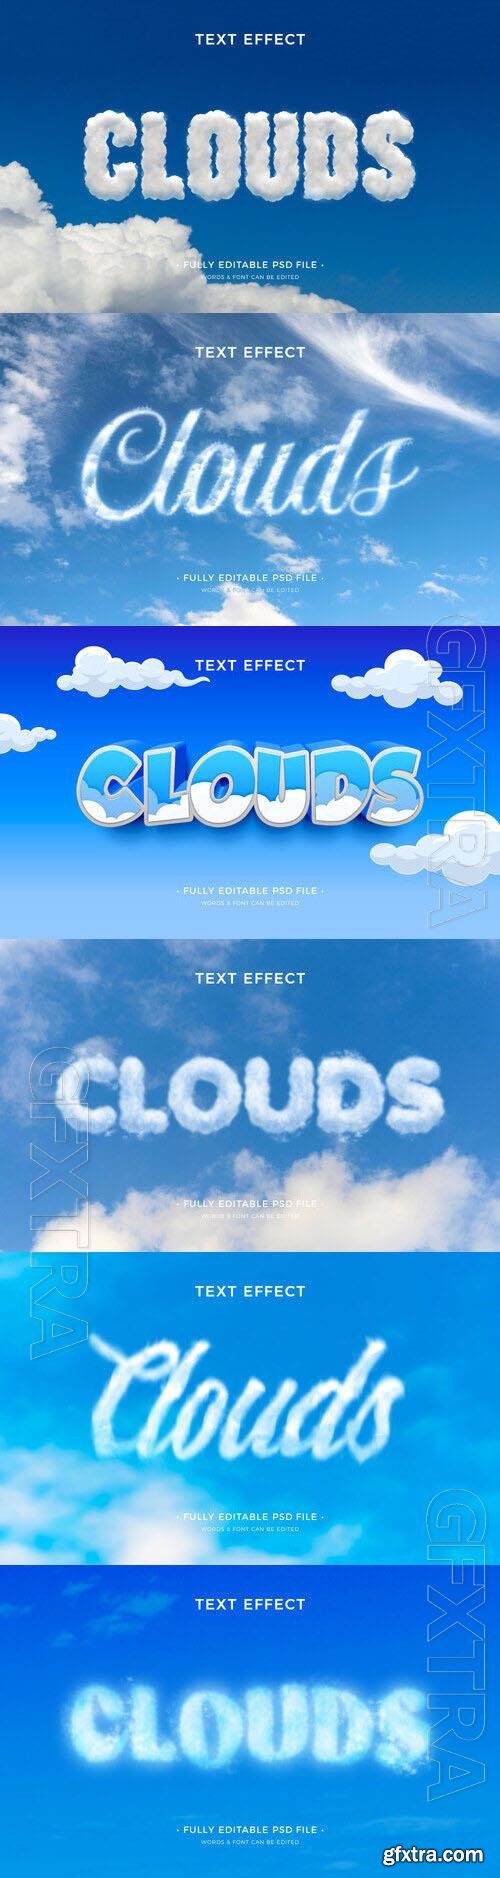 PSD clouds text effect template set 